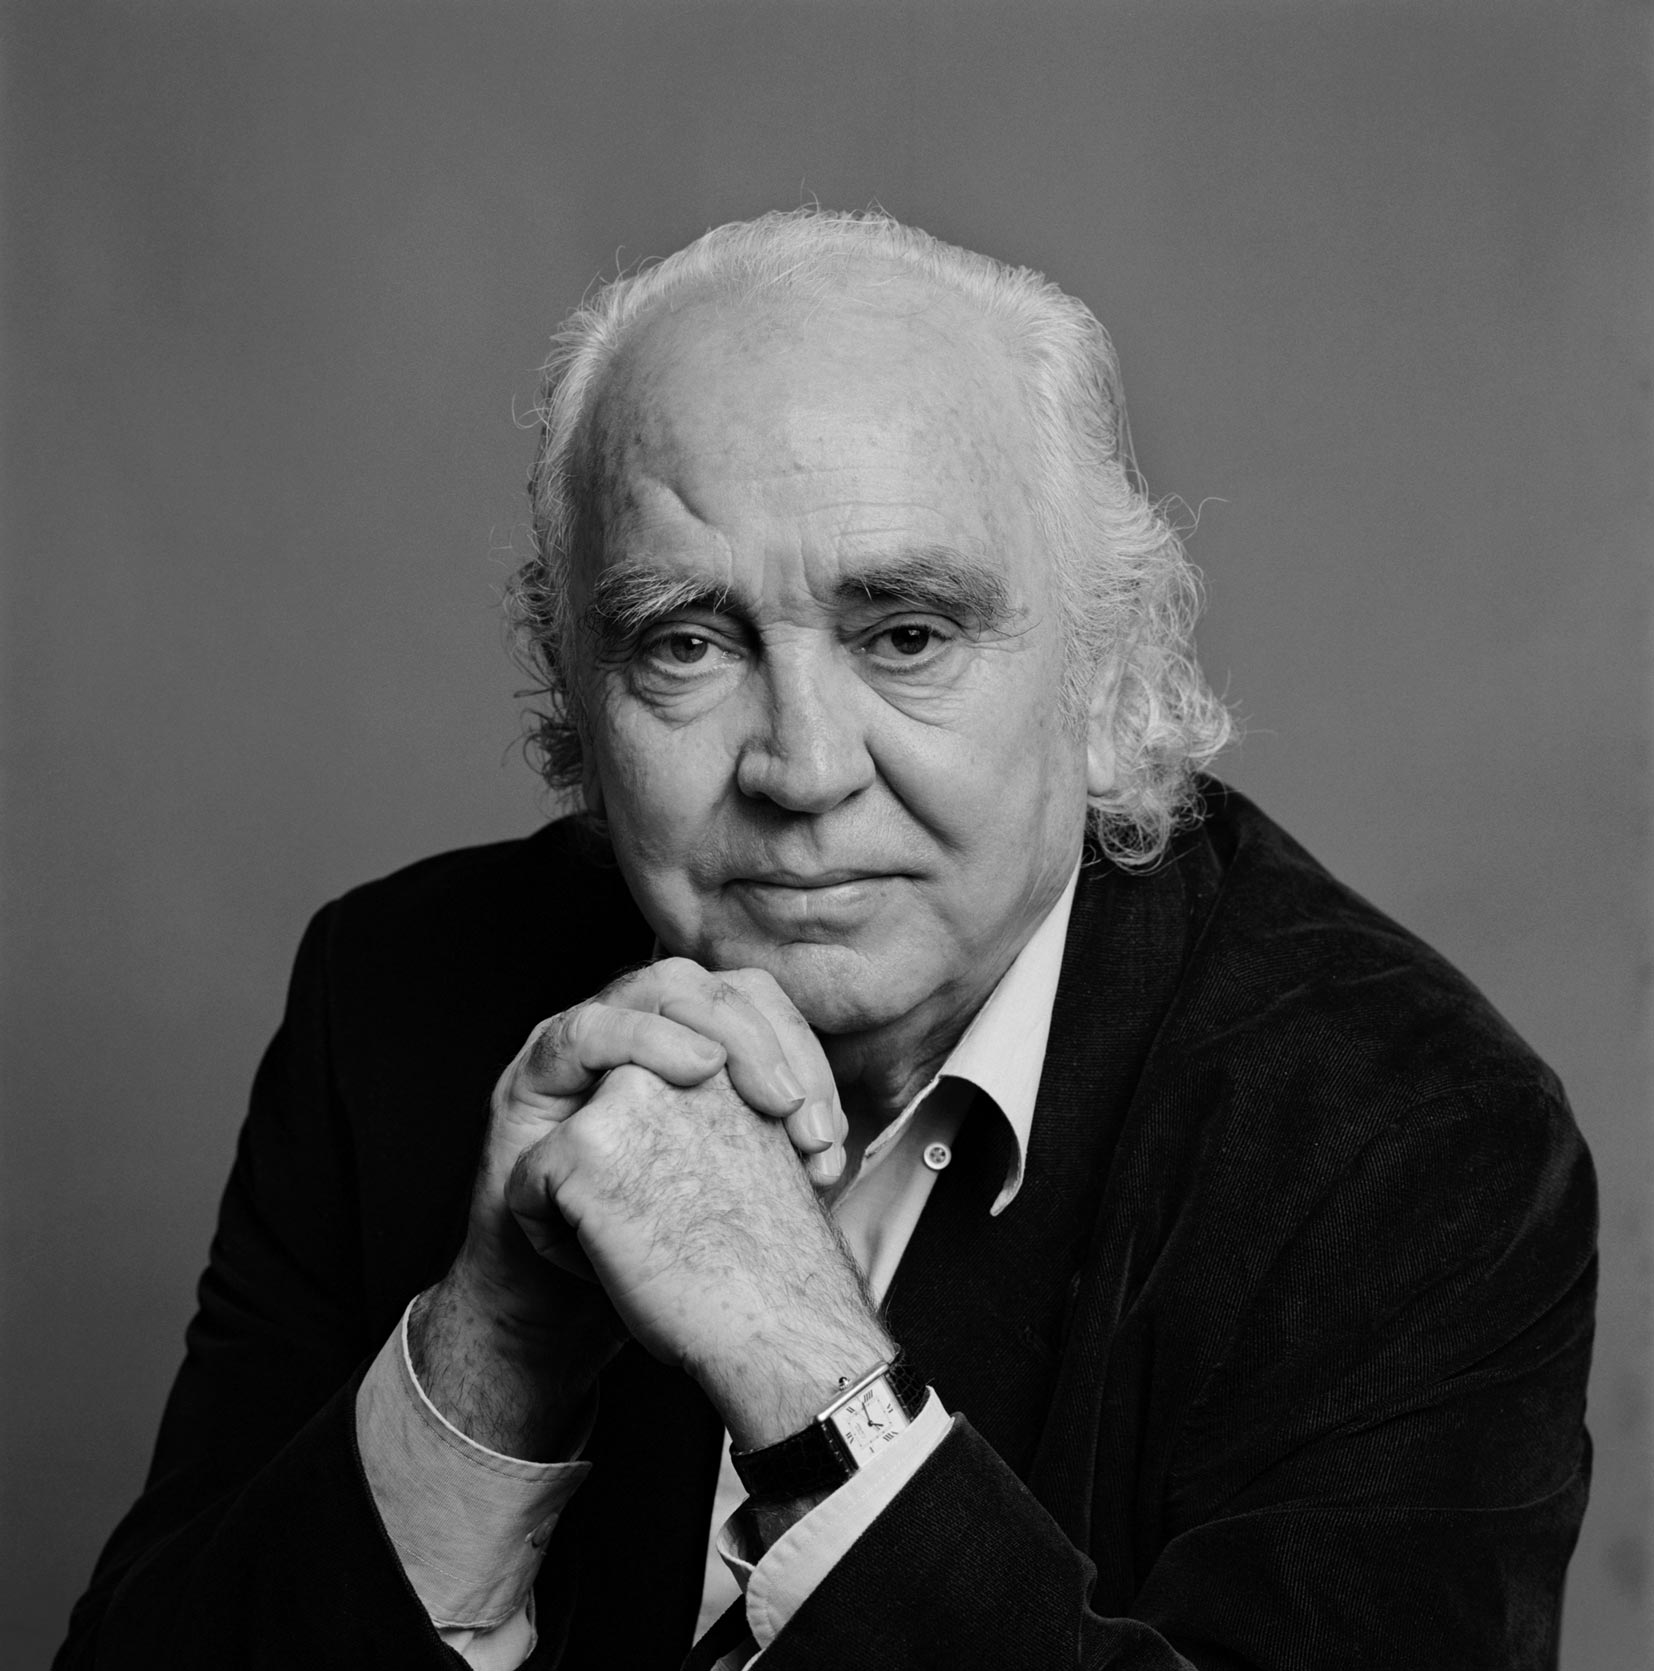 Antón García Abril, in memoriam